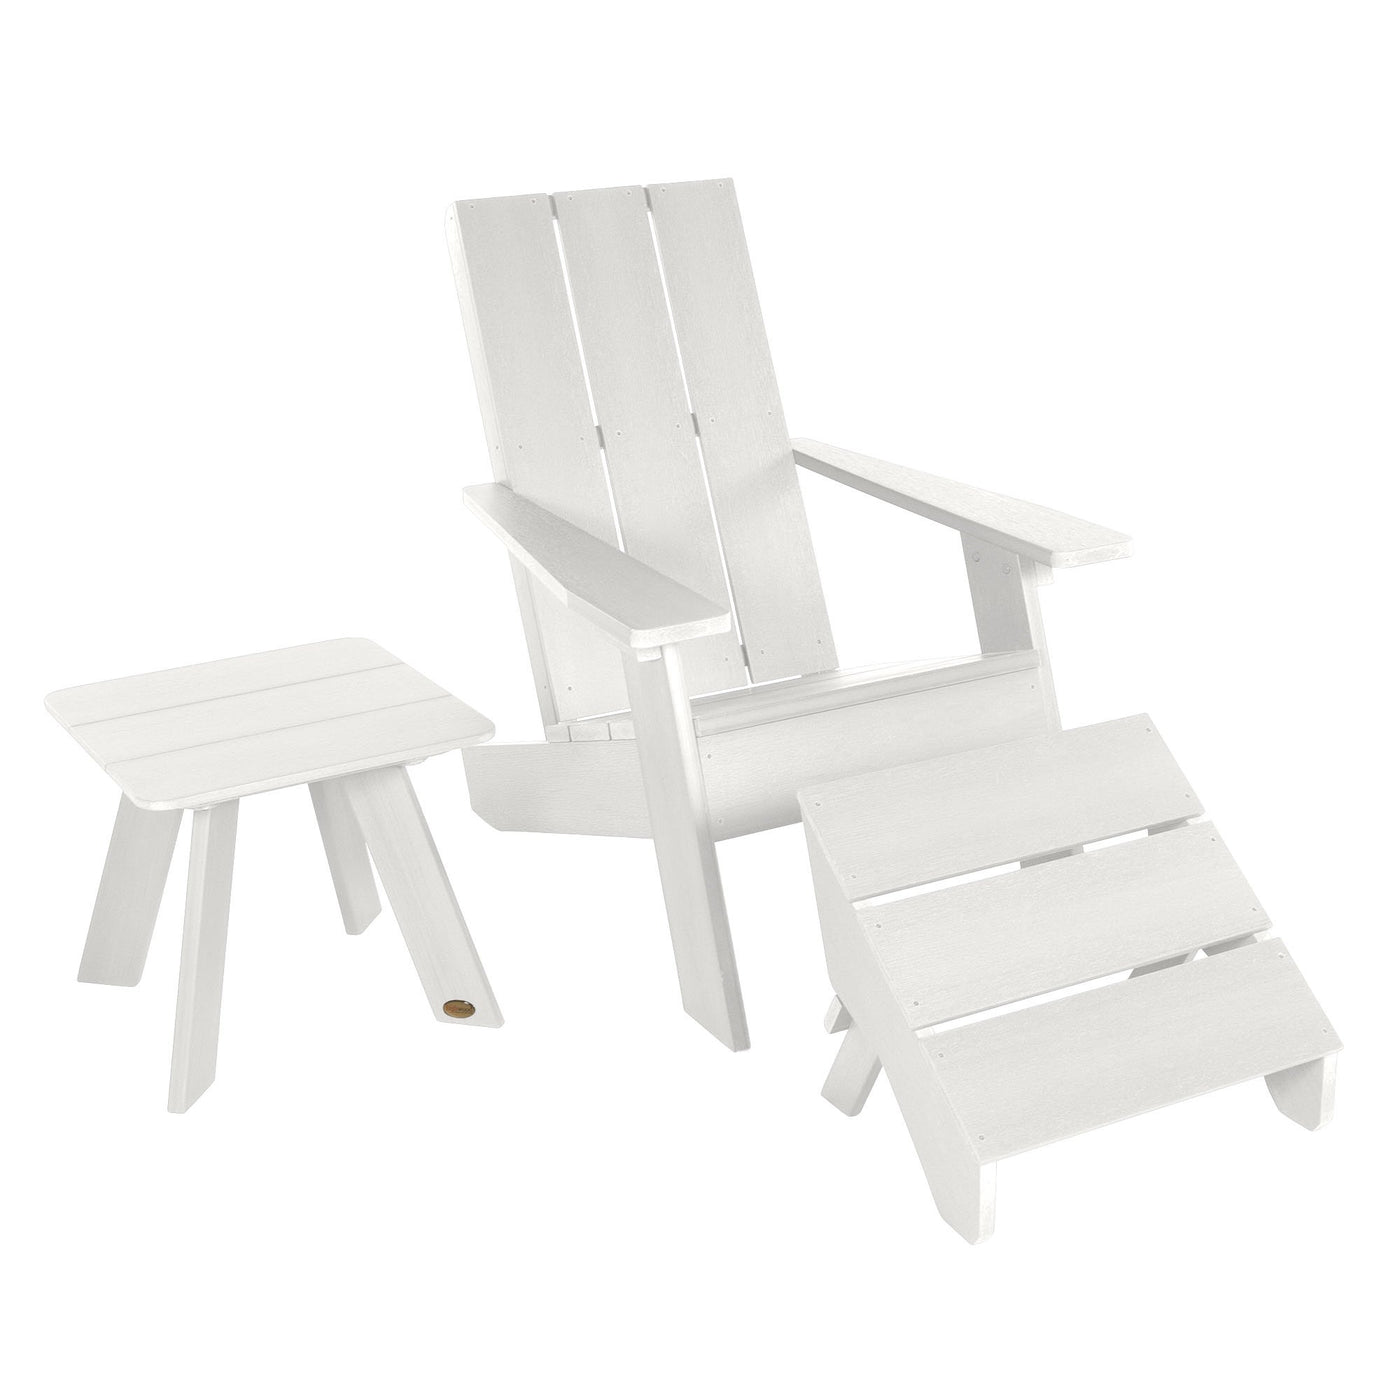 Barcelona Modern Adirondack Chair, Ottoman, and Side Table Highwood USA White 